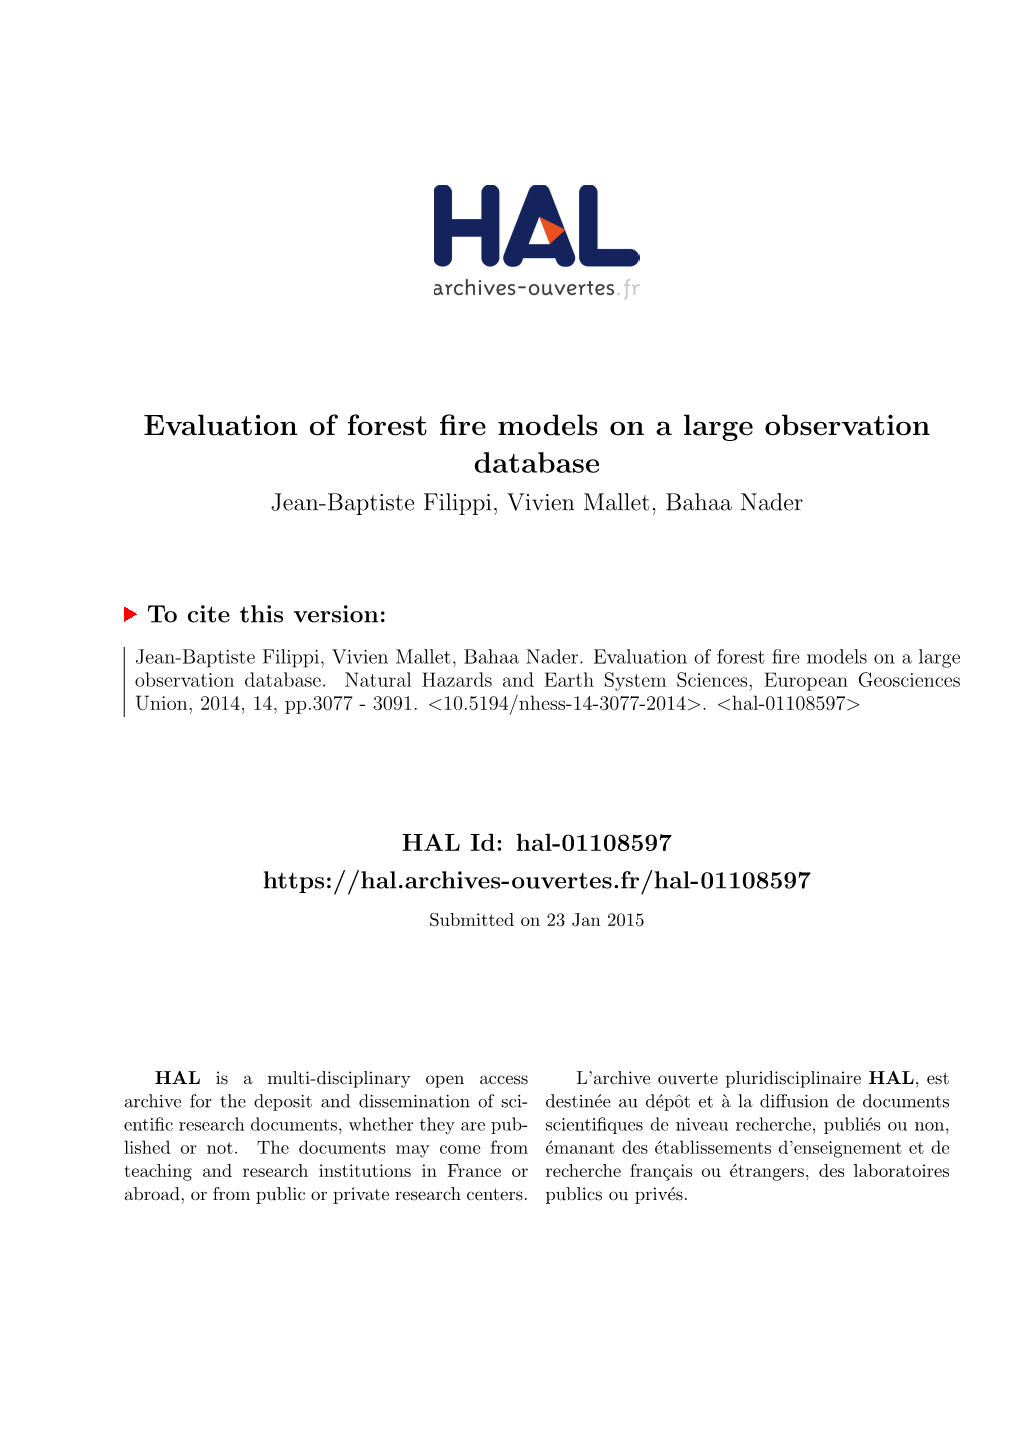 Evaluation of Forest Fire Models on a Large Observation Database